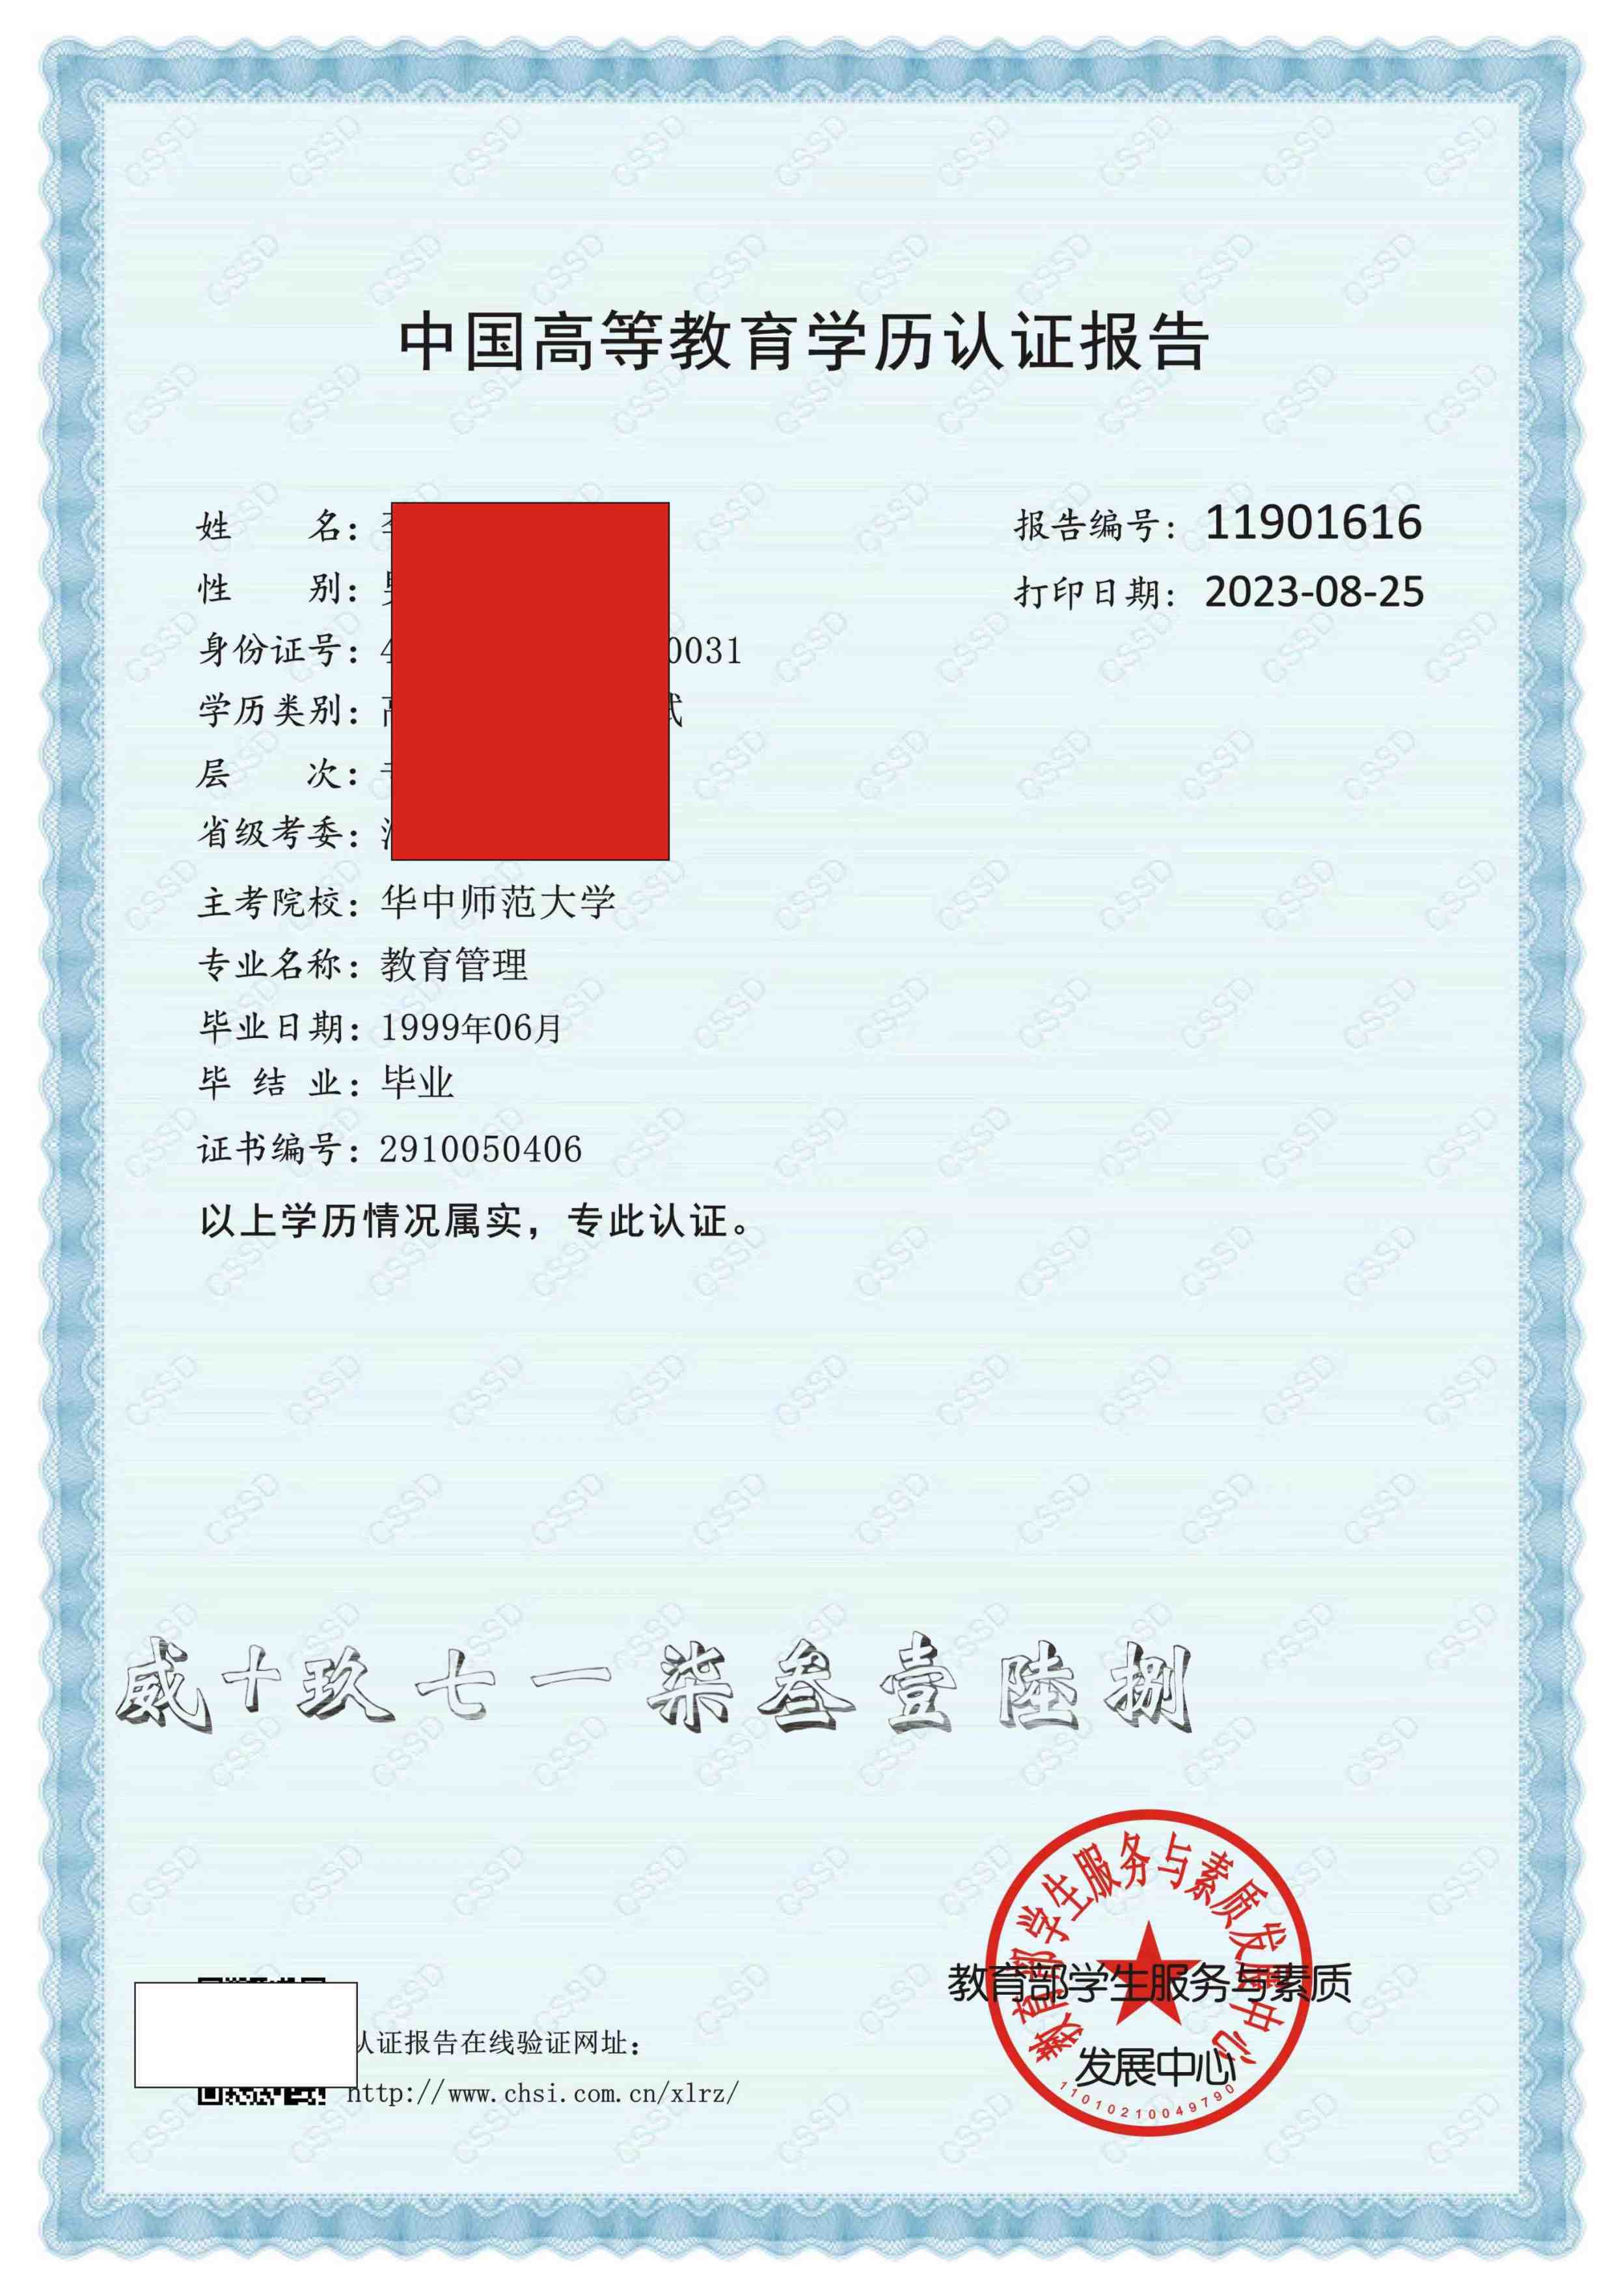 学历证书电子注册备案表 学籍在线验证报告 学历认证报告 中国高等